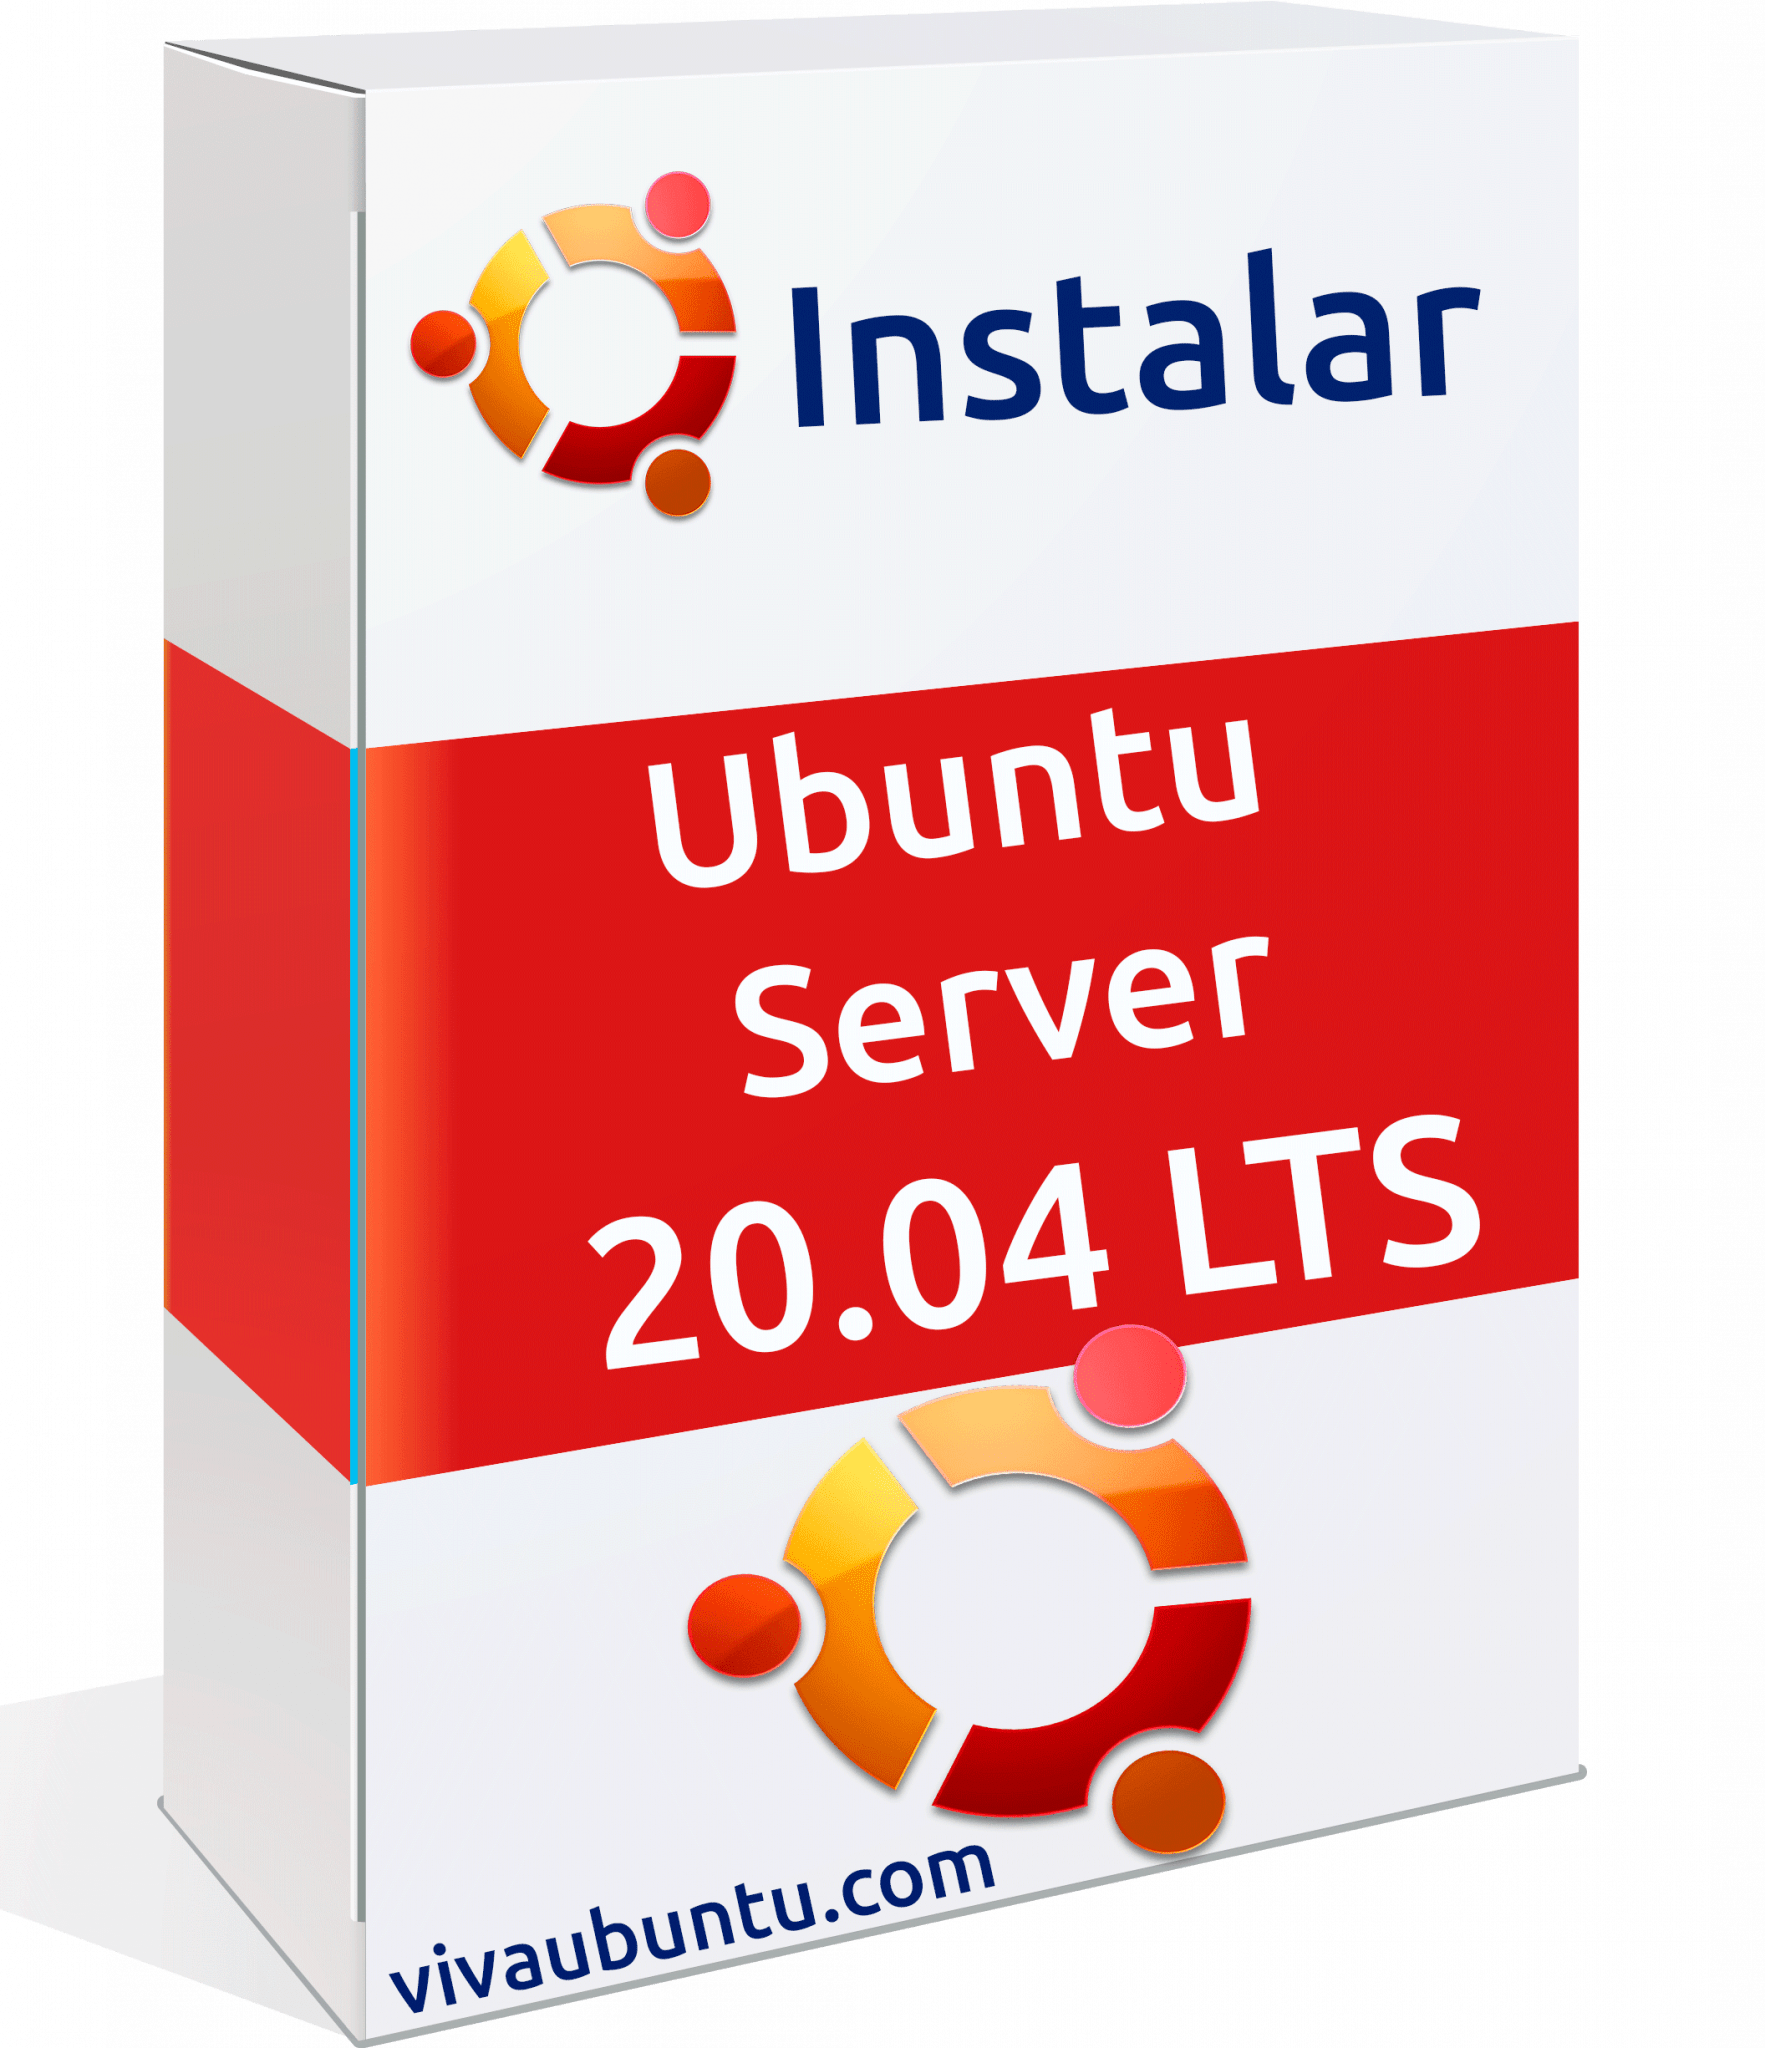 INSTALAR UBUNTU SERVER 20.04 LTS Viva Ubuntu